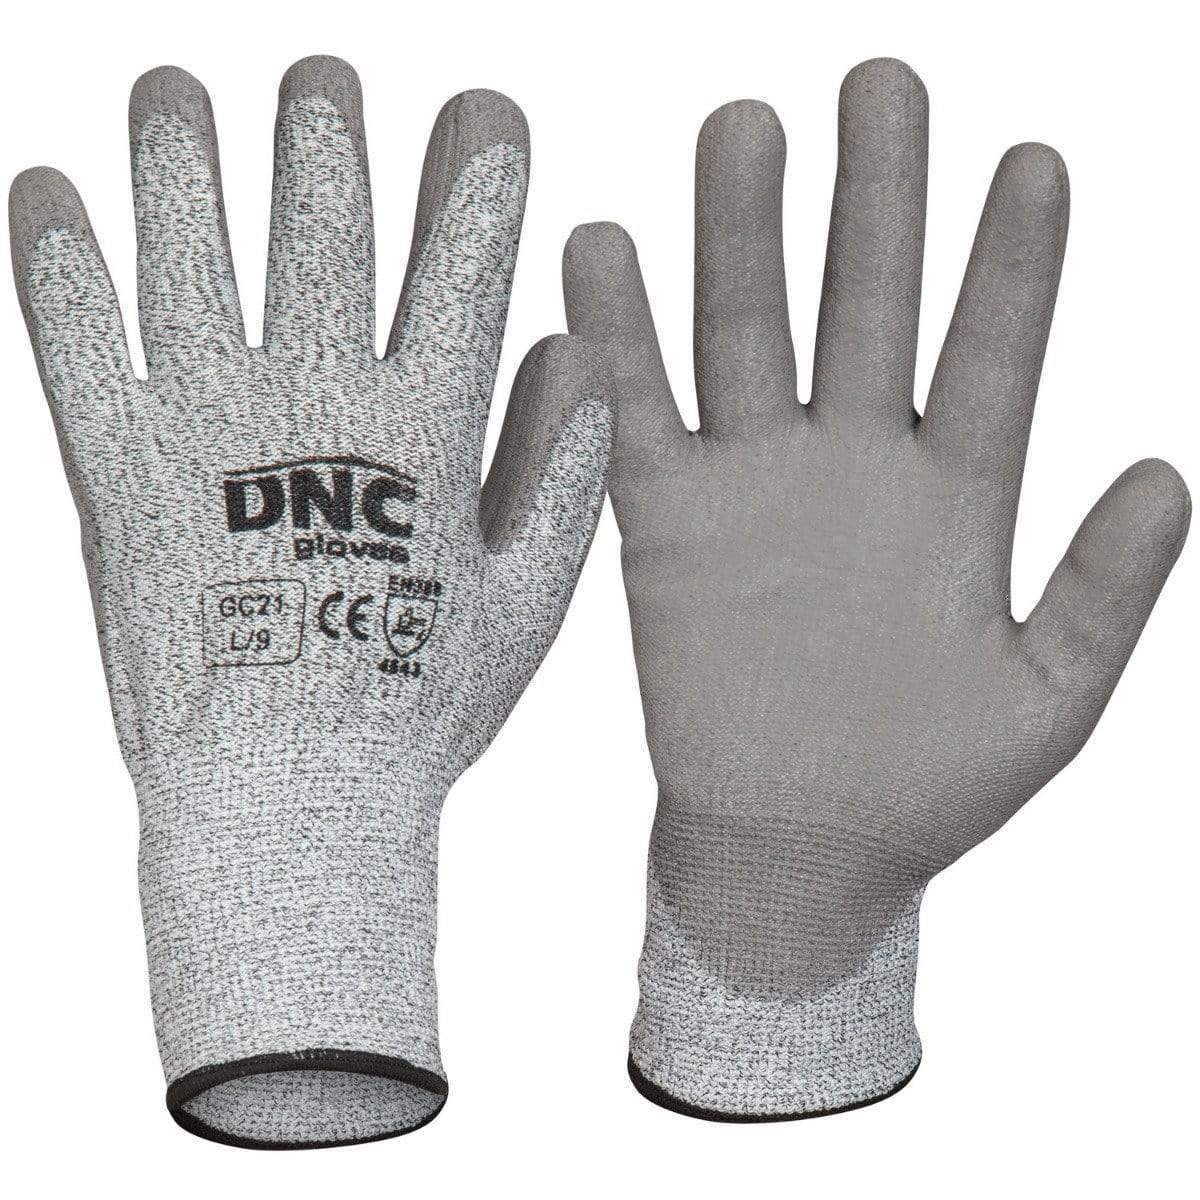 DNC Workwear PPE Grey/Grey / 2XL/11 DNC WORKWEAR Cut5- PU GC21